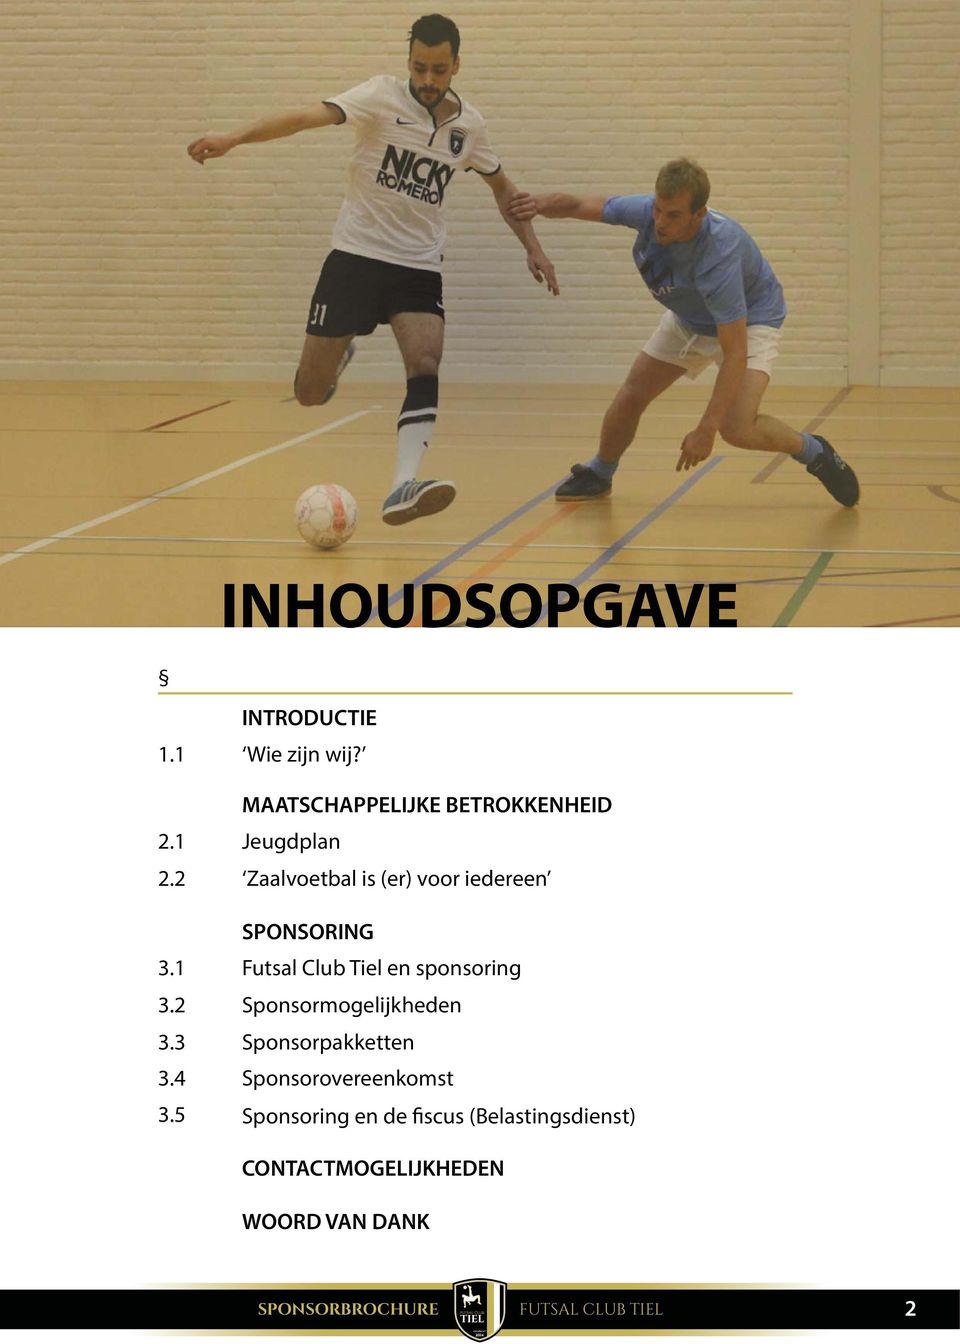 Futsal Club Tiel en sponsoring Sponsormogelijkheden Sponsorpakketten Sponsorovereenkomst